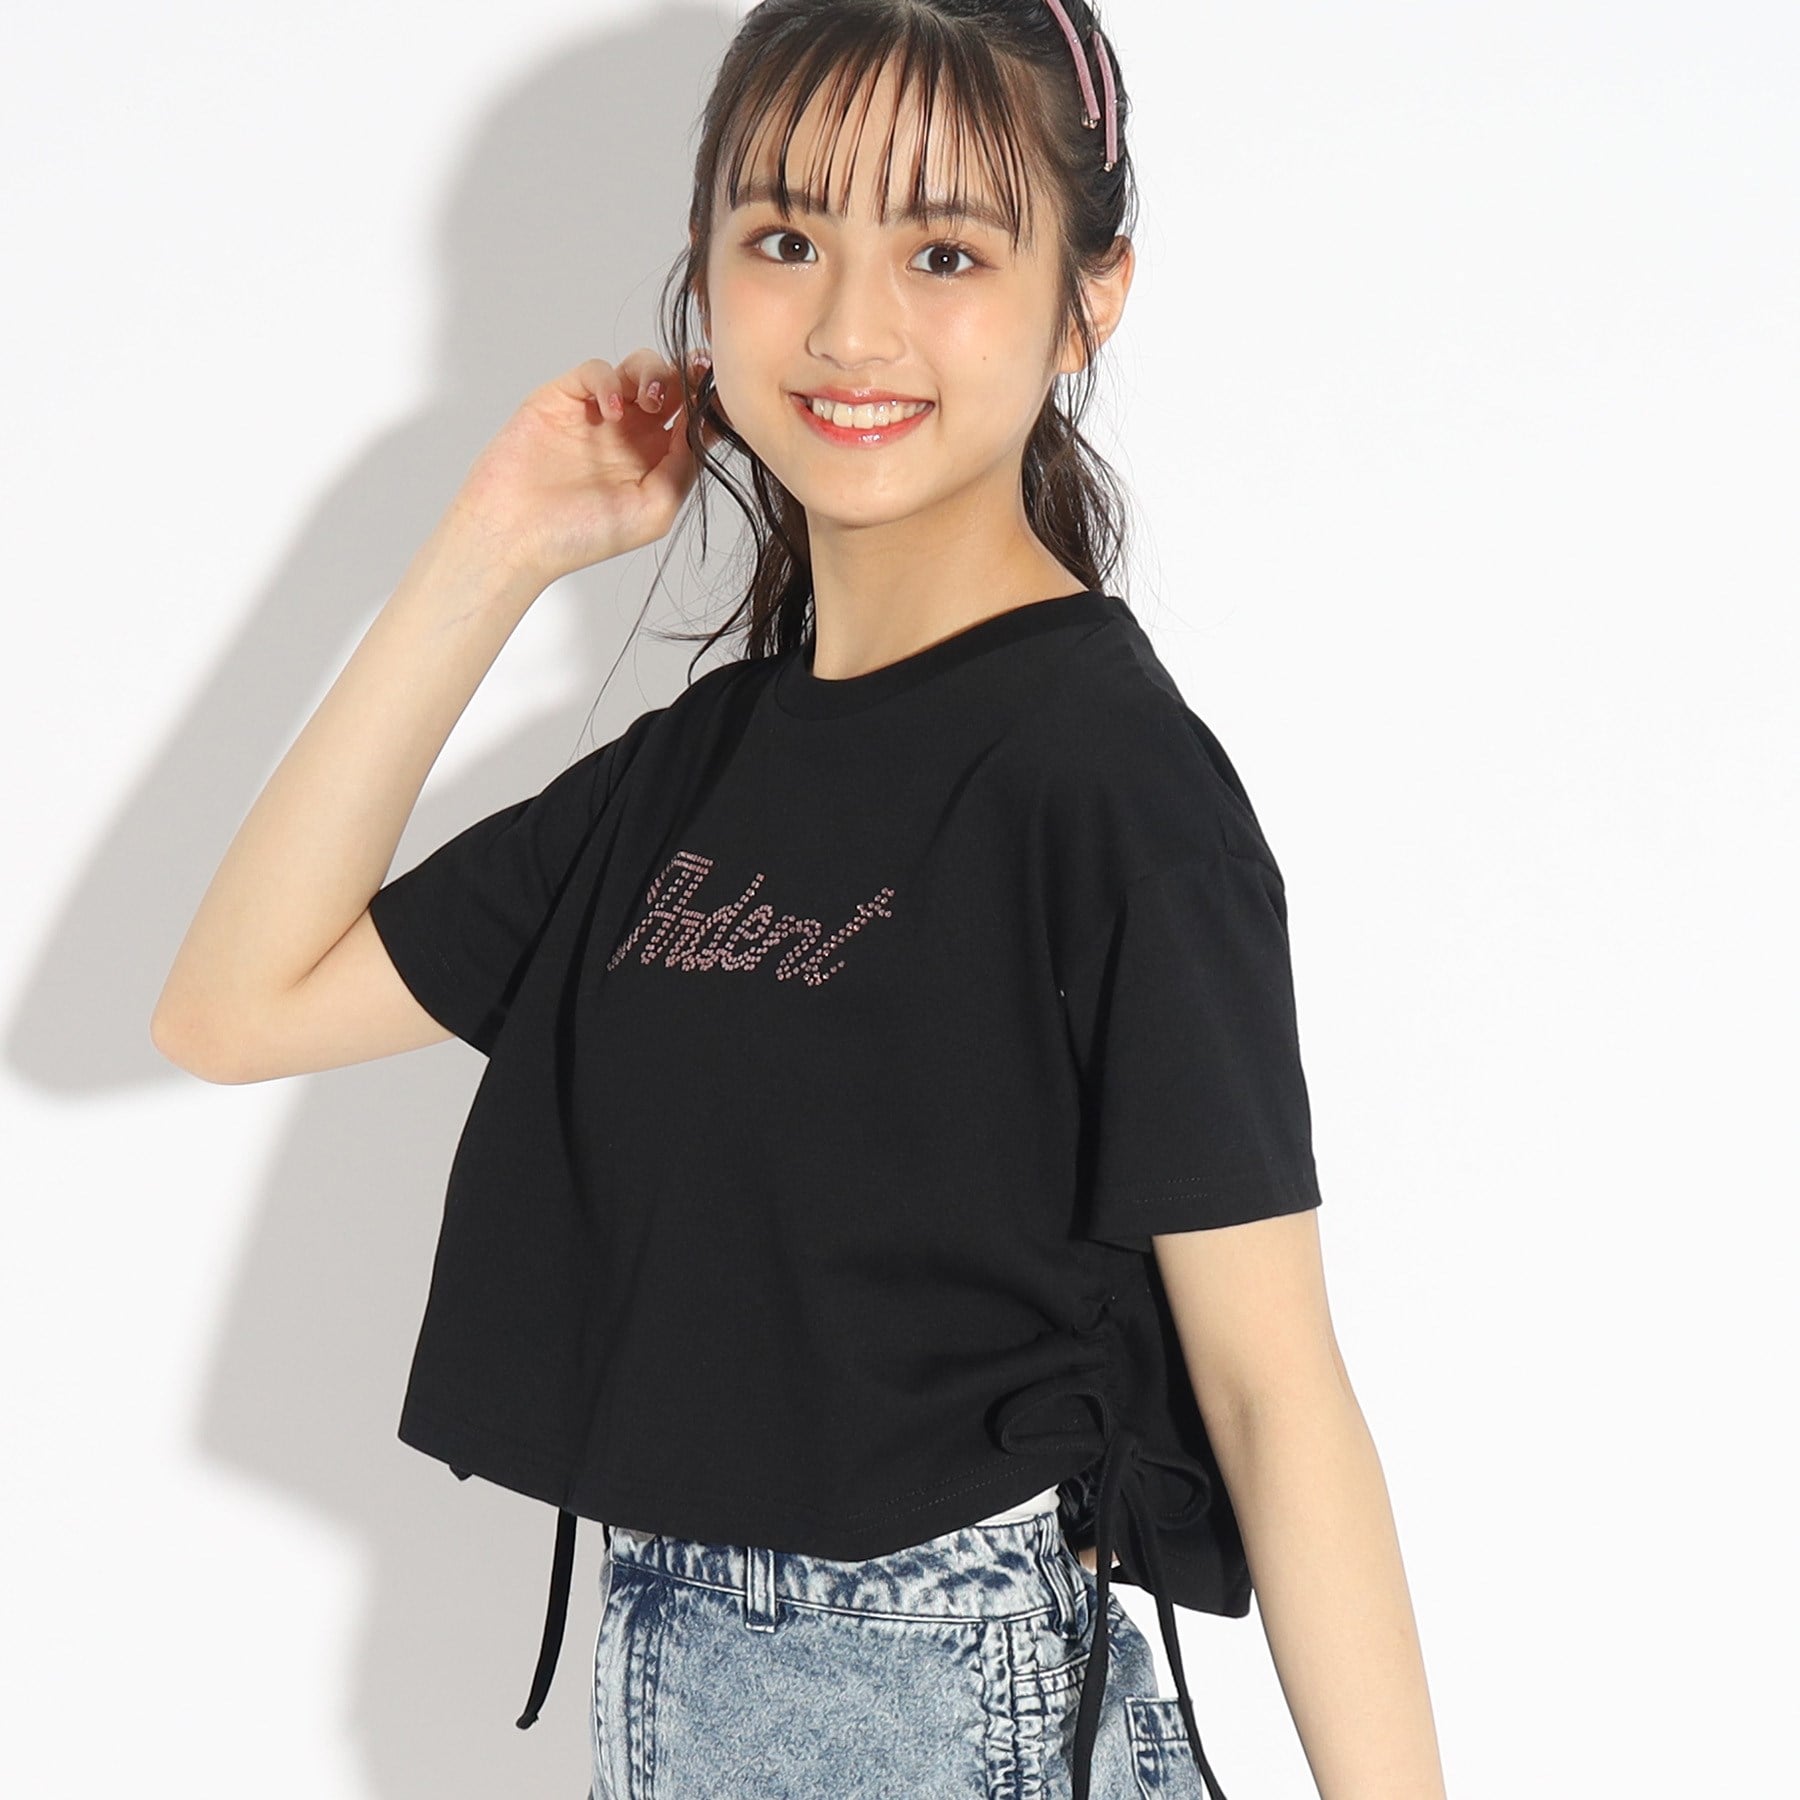 ピンク ラテ(PINK-latte)の裾シャーリングTシャツ ブラック(019)